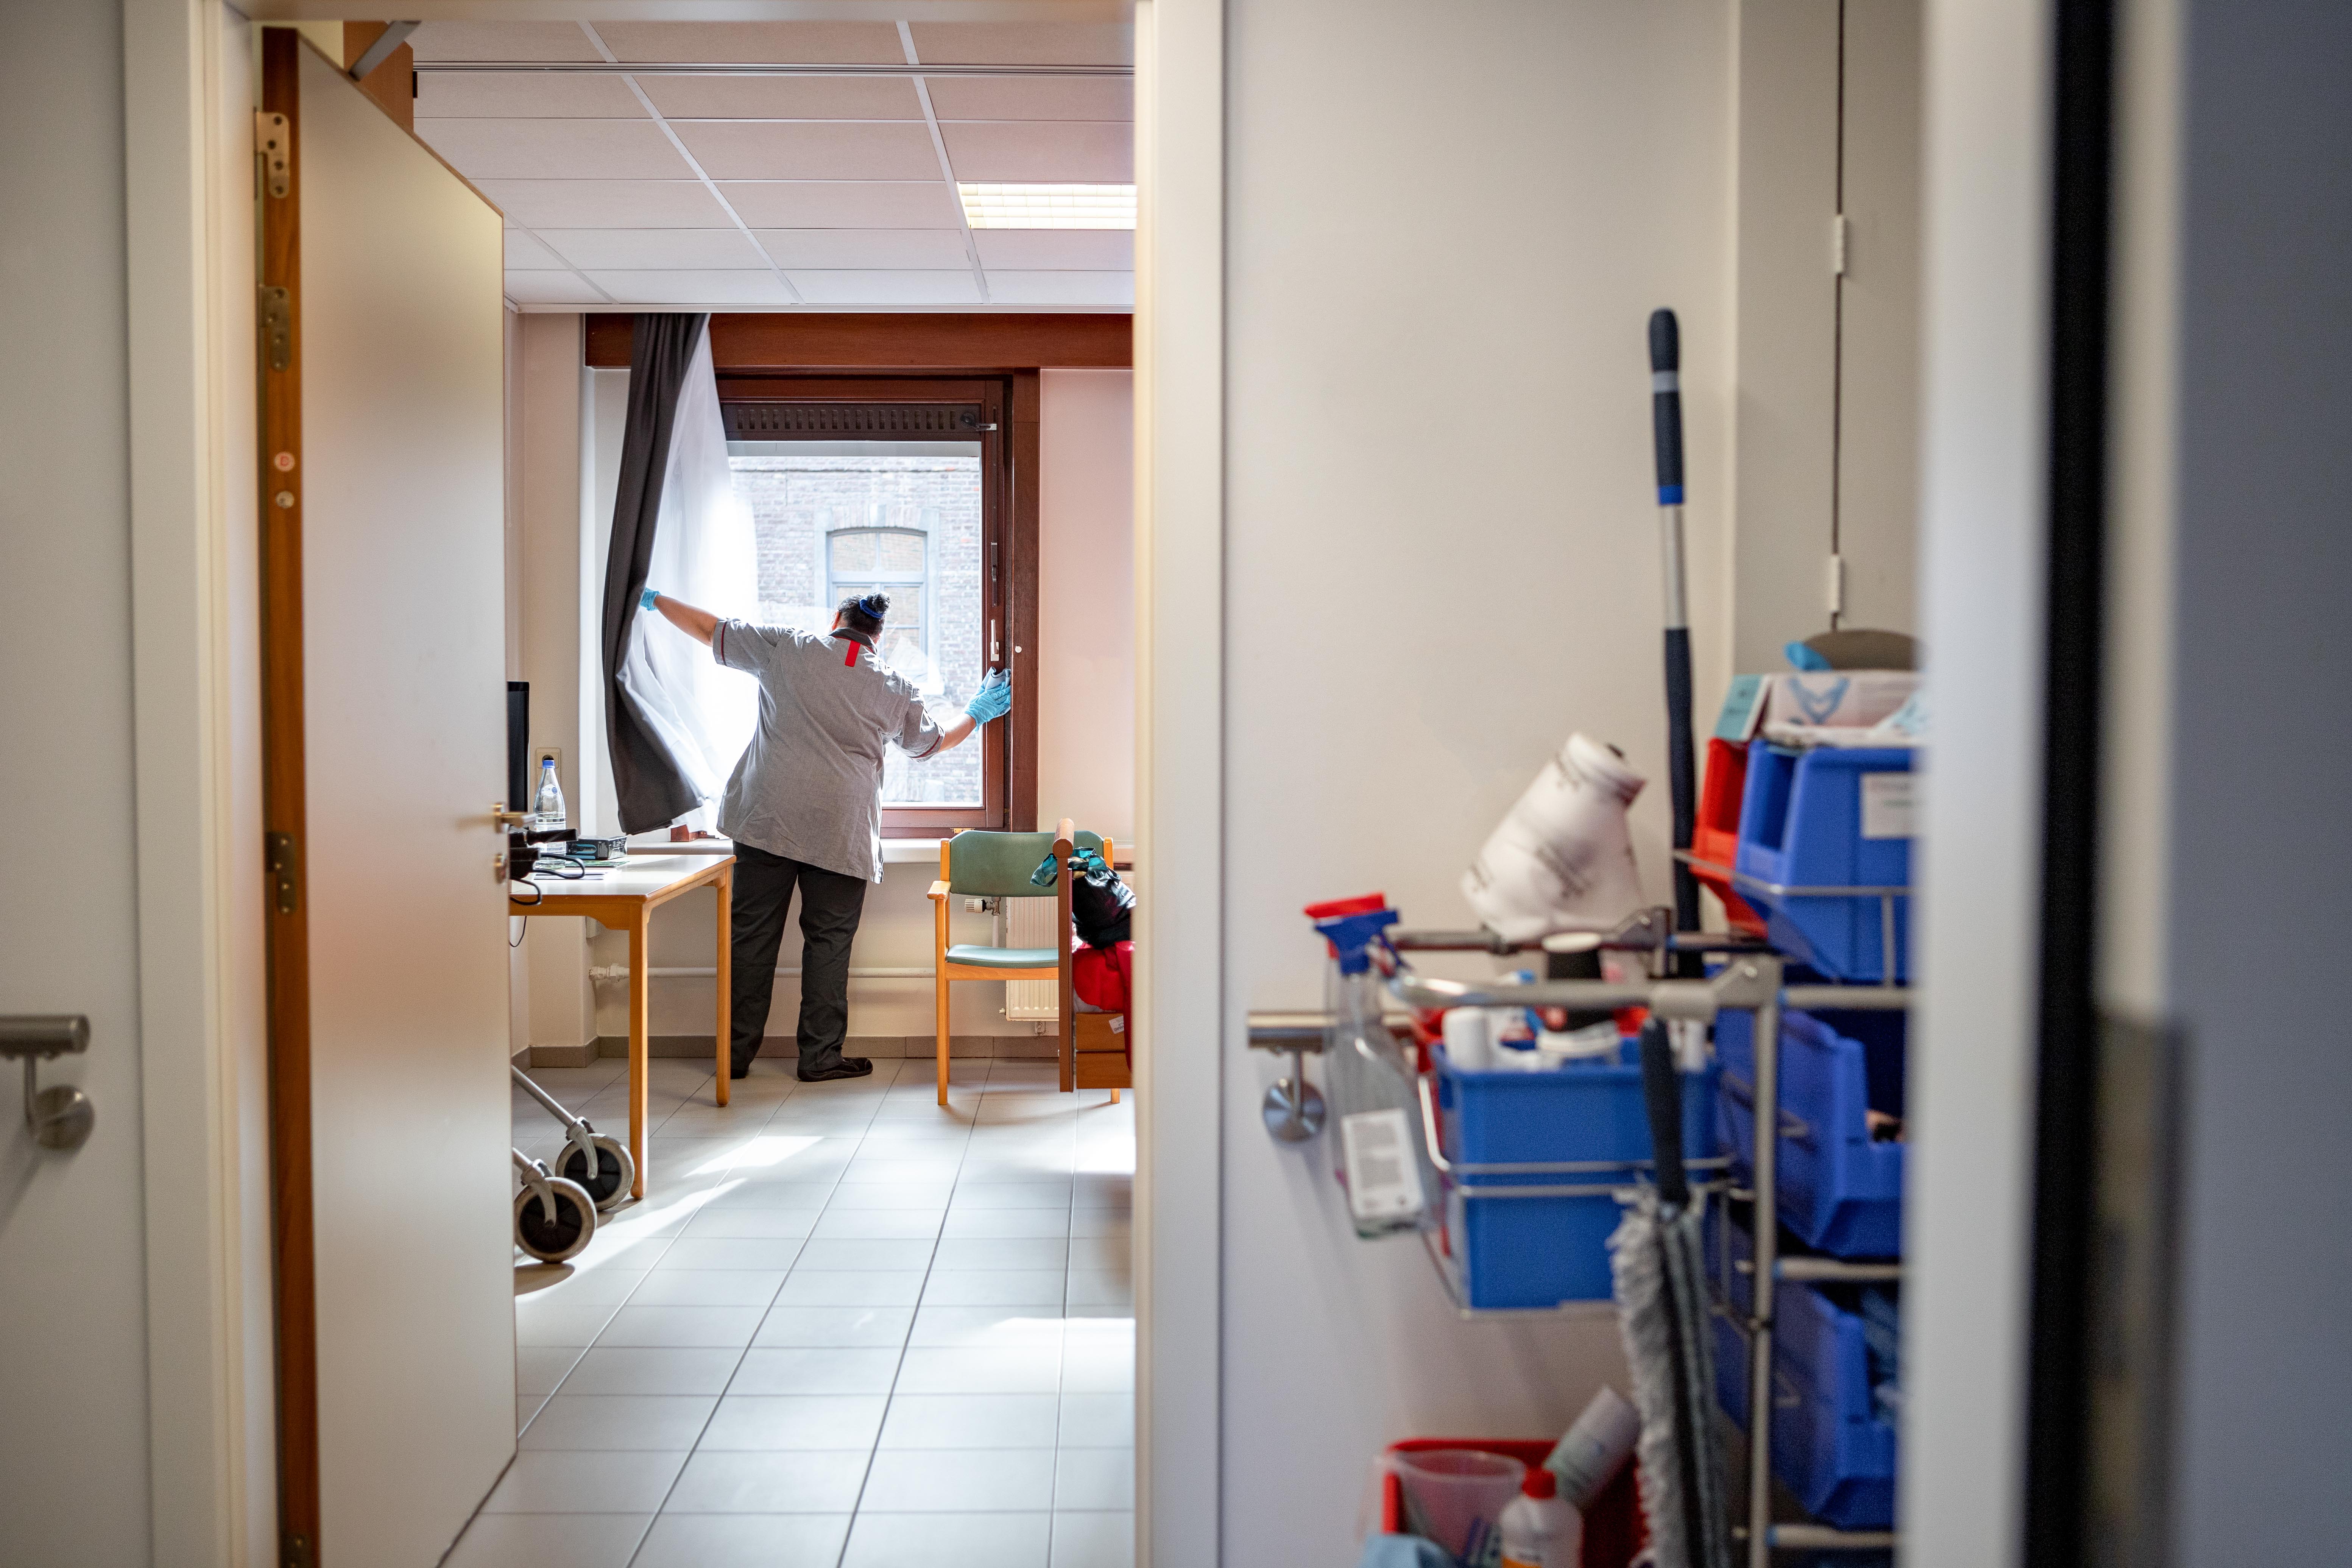 Poetshulp reinigt de ramen in woonzorgcentrum de Refuge in Gent